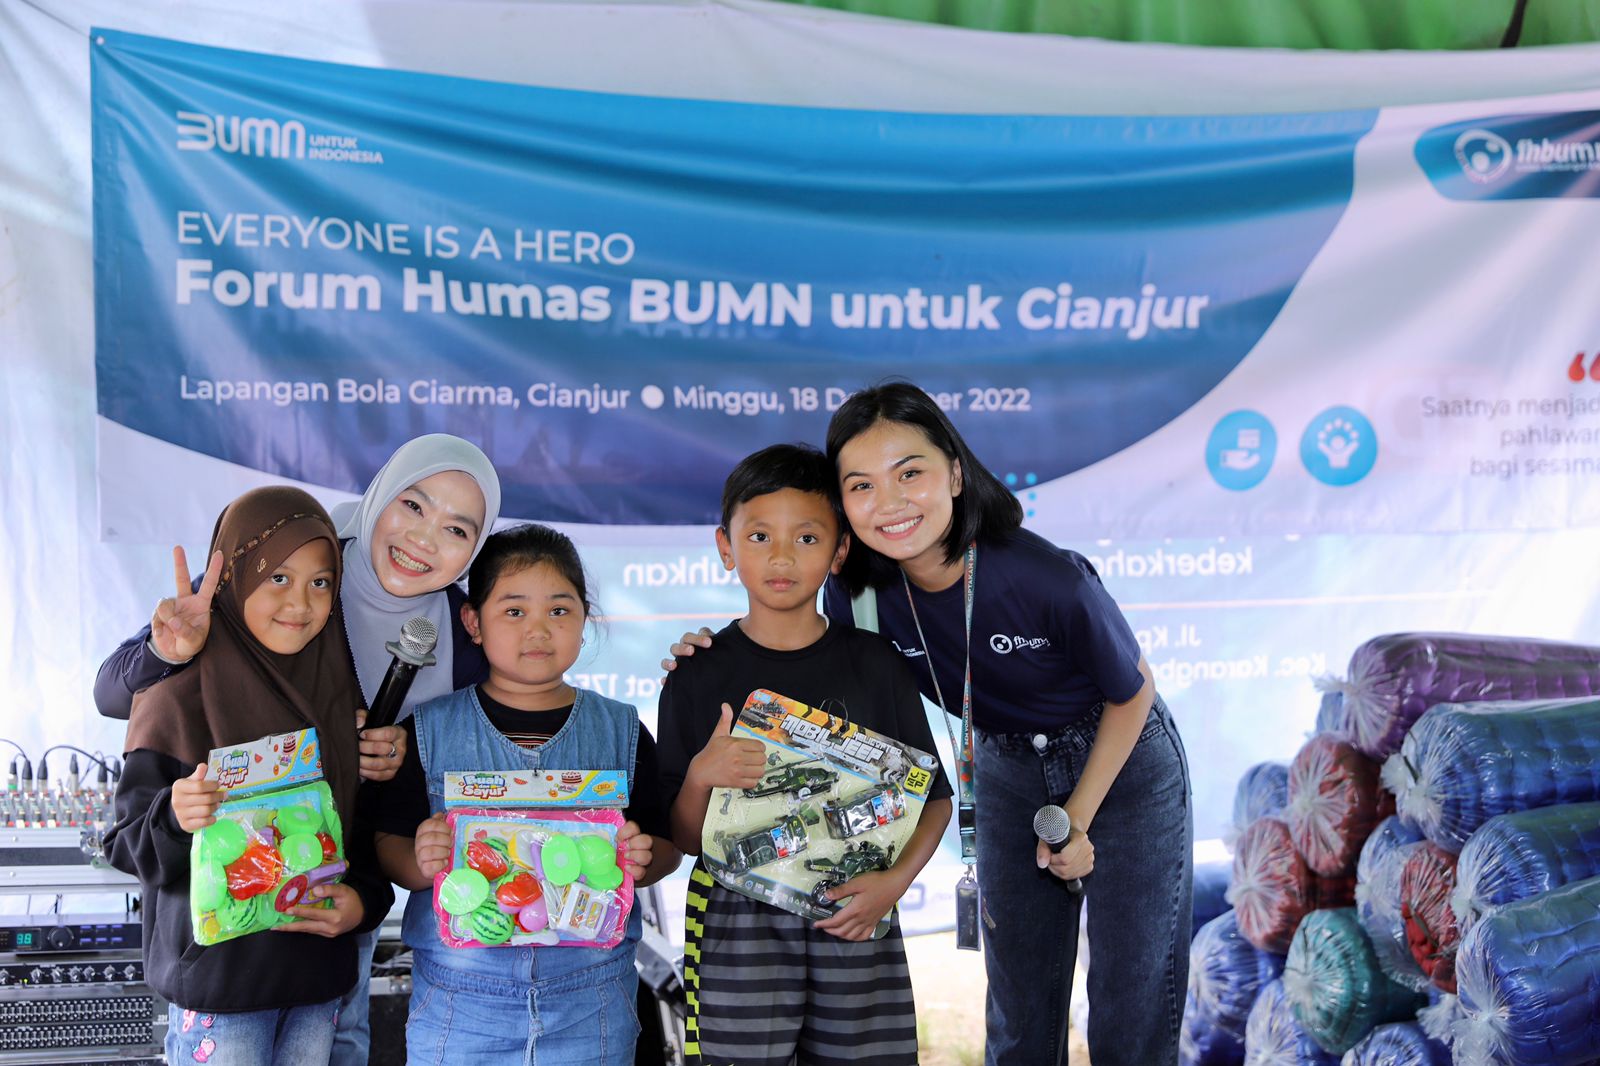 Jalankan Aktivitas Trauma Healing,  Forum Humas BUMN Gelar Nobar untuk Warga Korban Gempa Cianjur